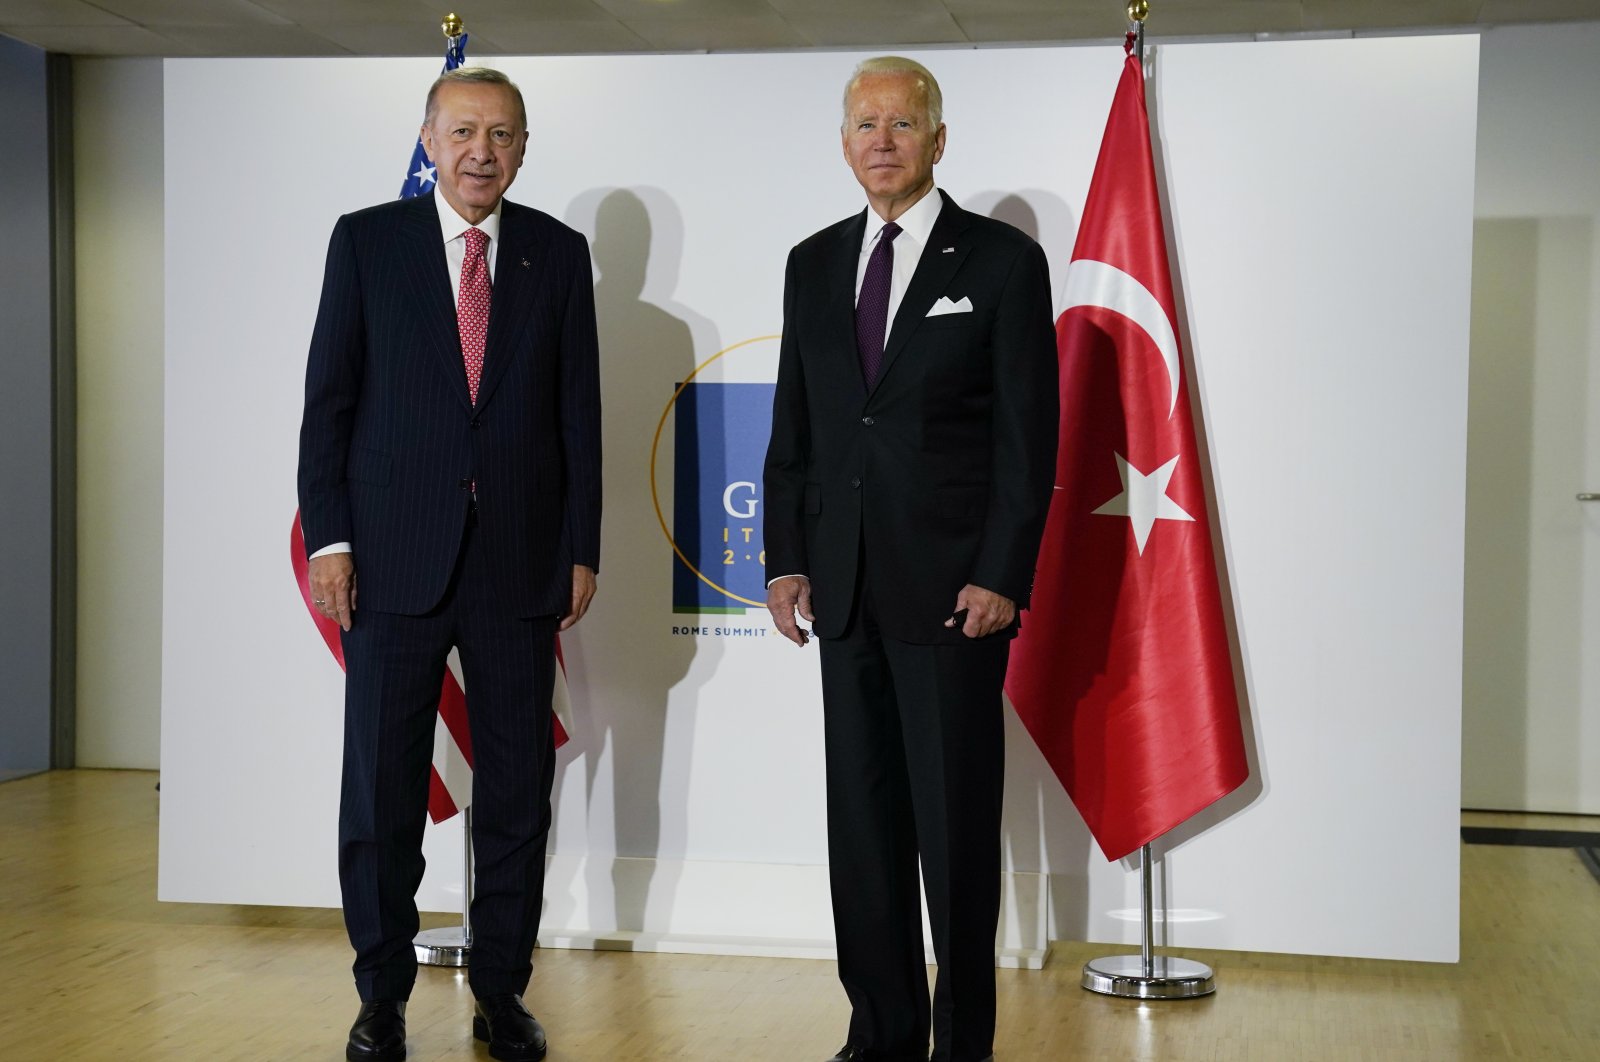 Erdoğan, Biden agree to establish joint mechanism to improve ties